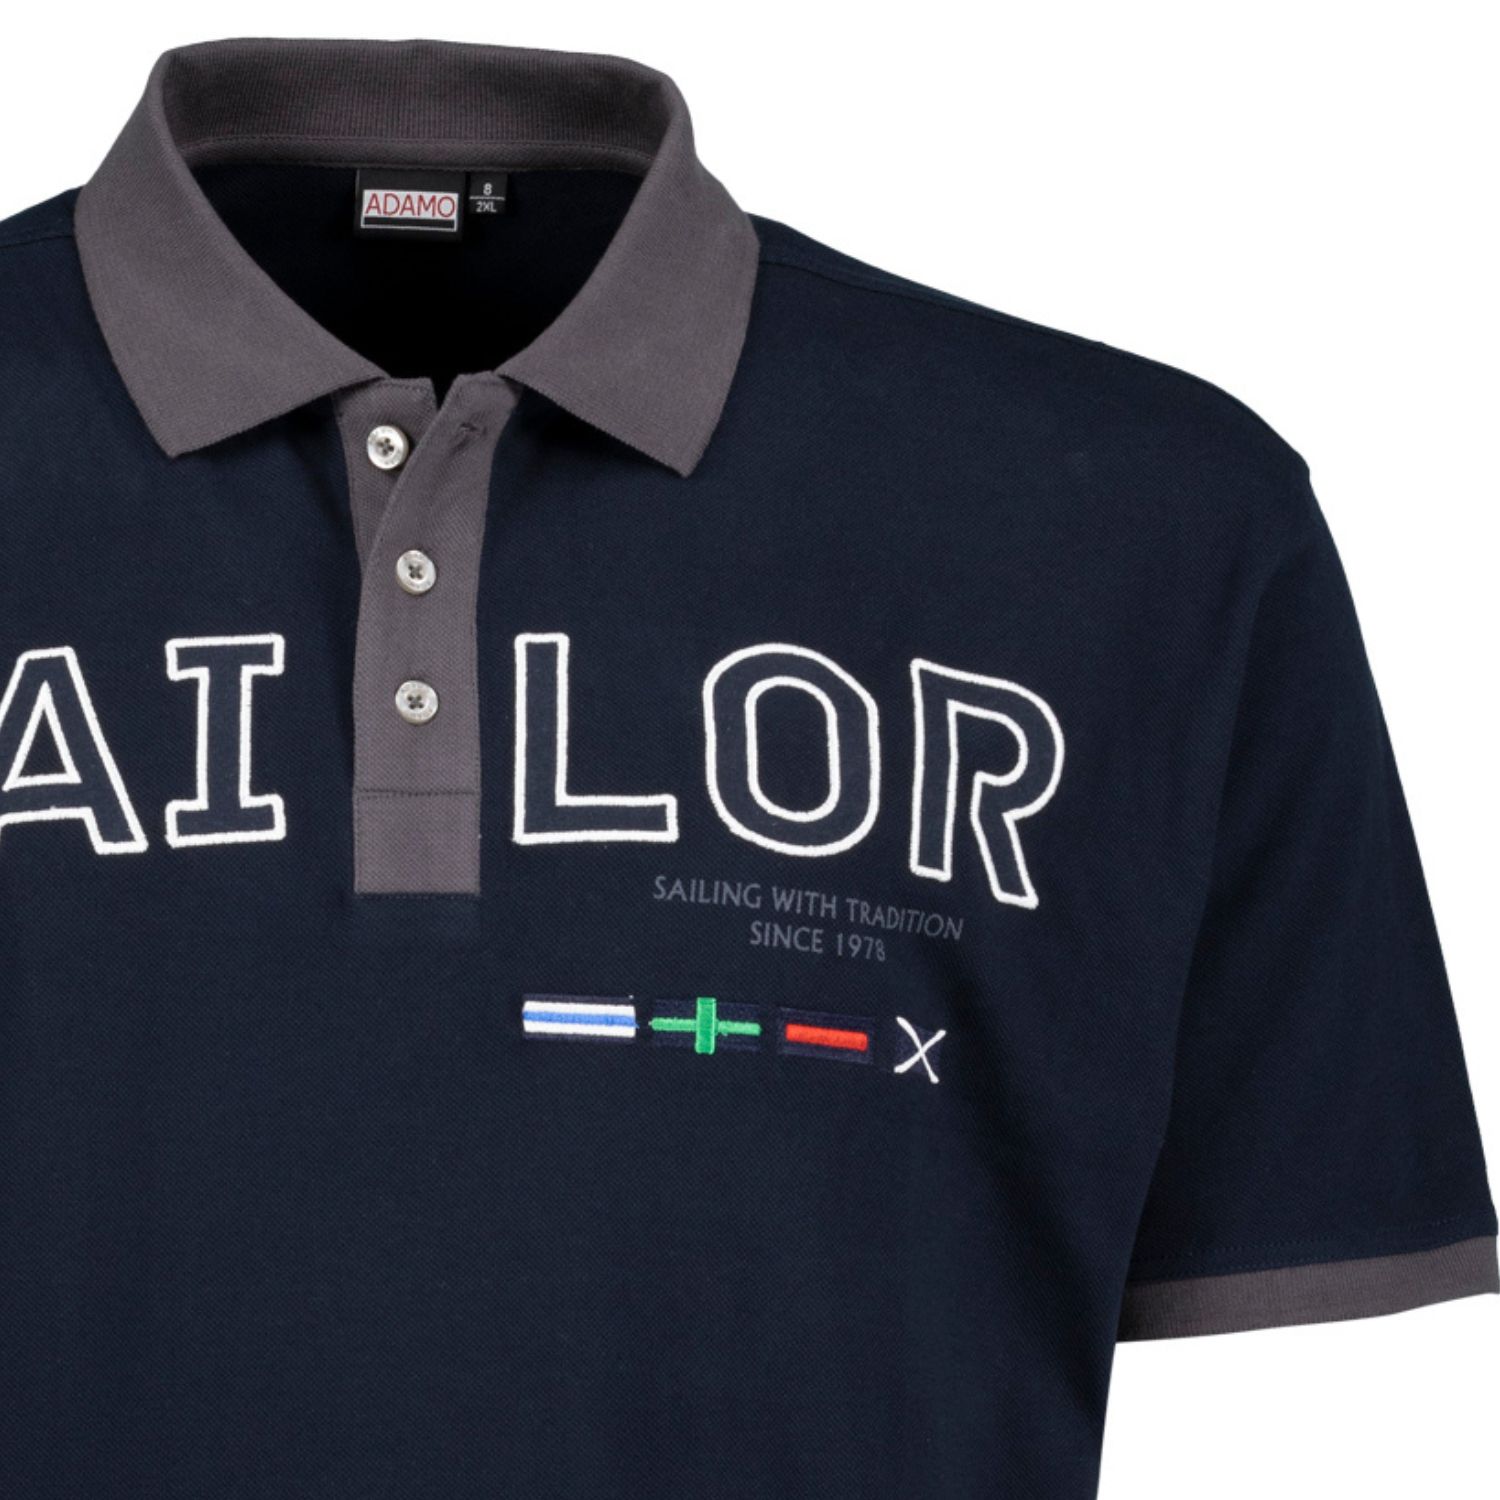 Kurzarm Polo Shirt in navy Serie SAILOR mit Print und Stickerei von ADAMO in Pique Qualität für Herren in großen Größen bis 10XL